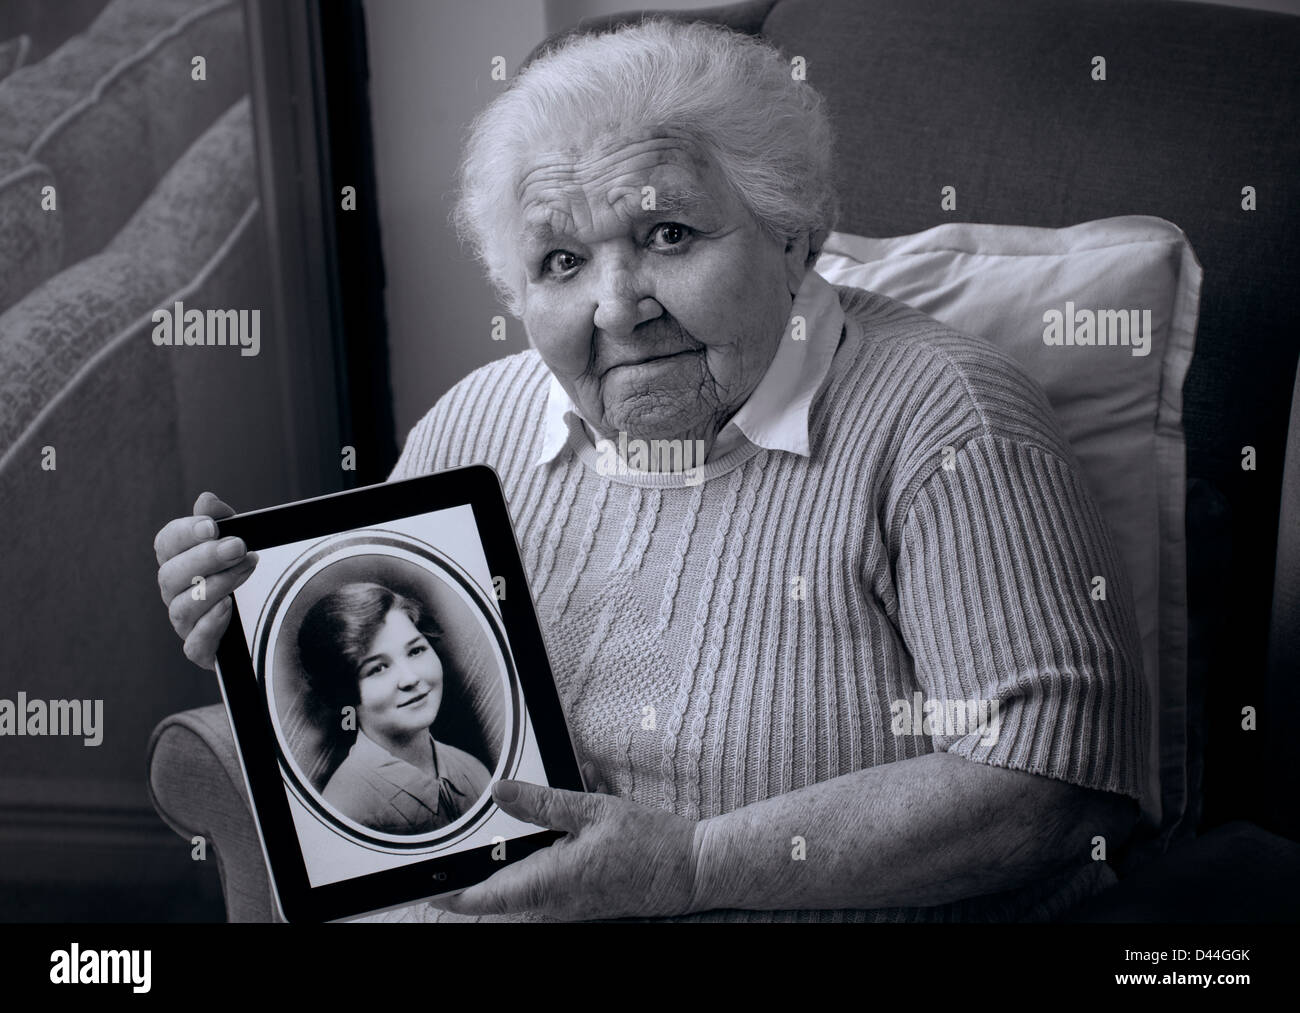 Alter ALTERSGENEN Vergleich 98 Jahre älteren Dame Halten des iPad Tablet Computer. sepia Porträt der sich vor 80 Jahren im Alter von 18 Jahren genommen Stockfoto